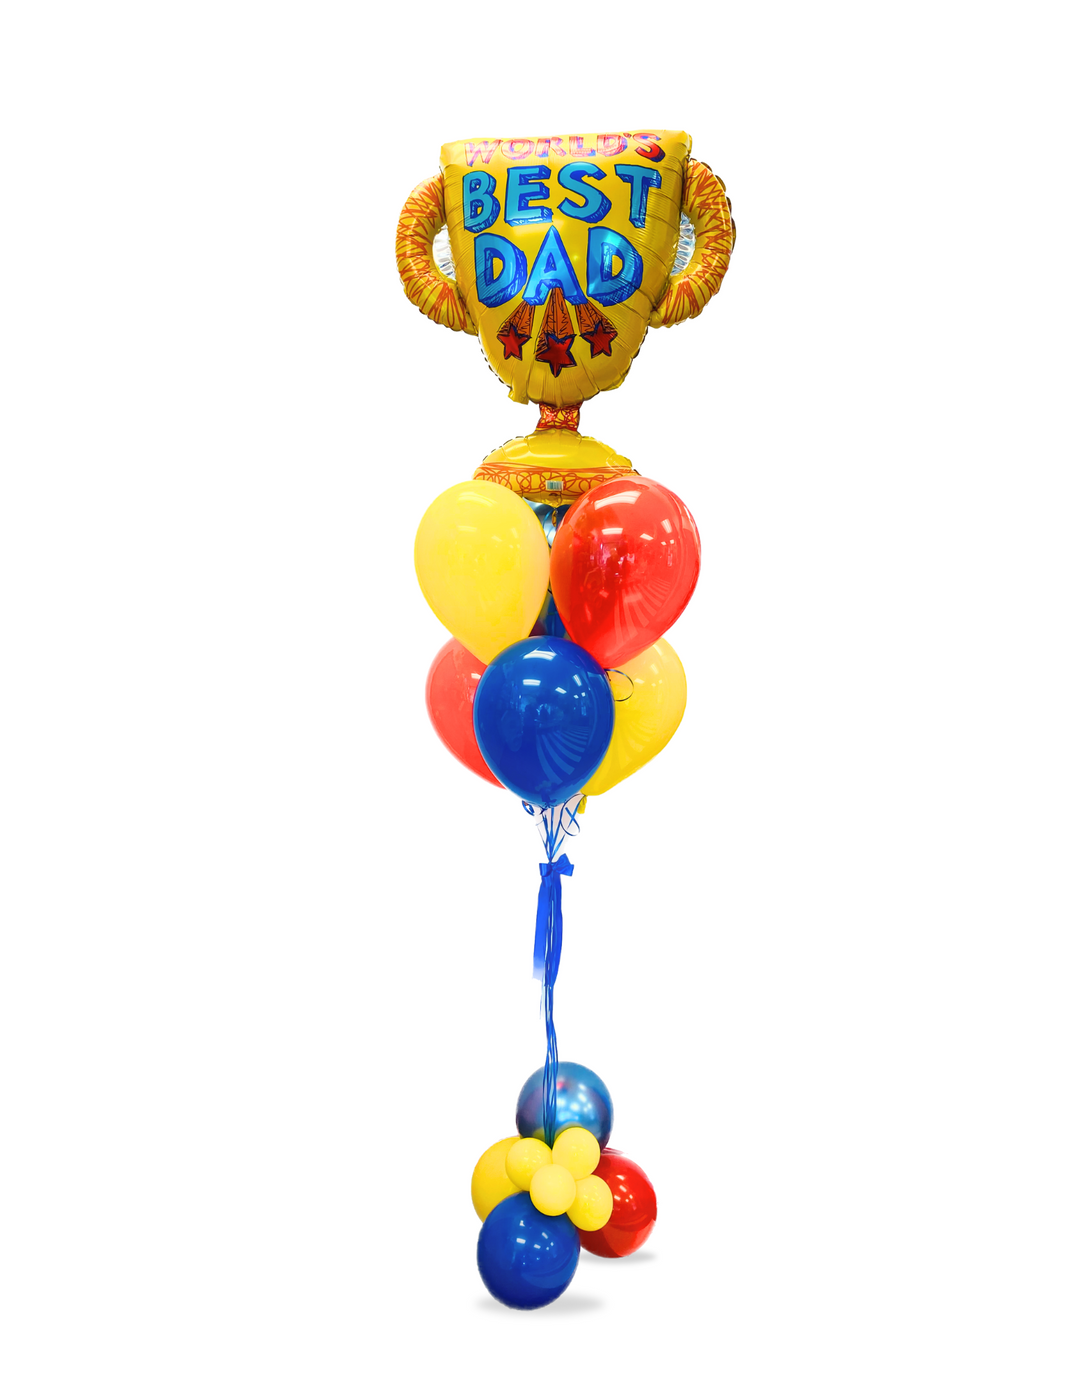 World's Best Dad Trophy Balloon Bouquet